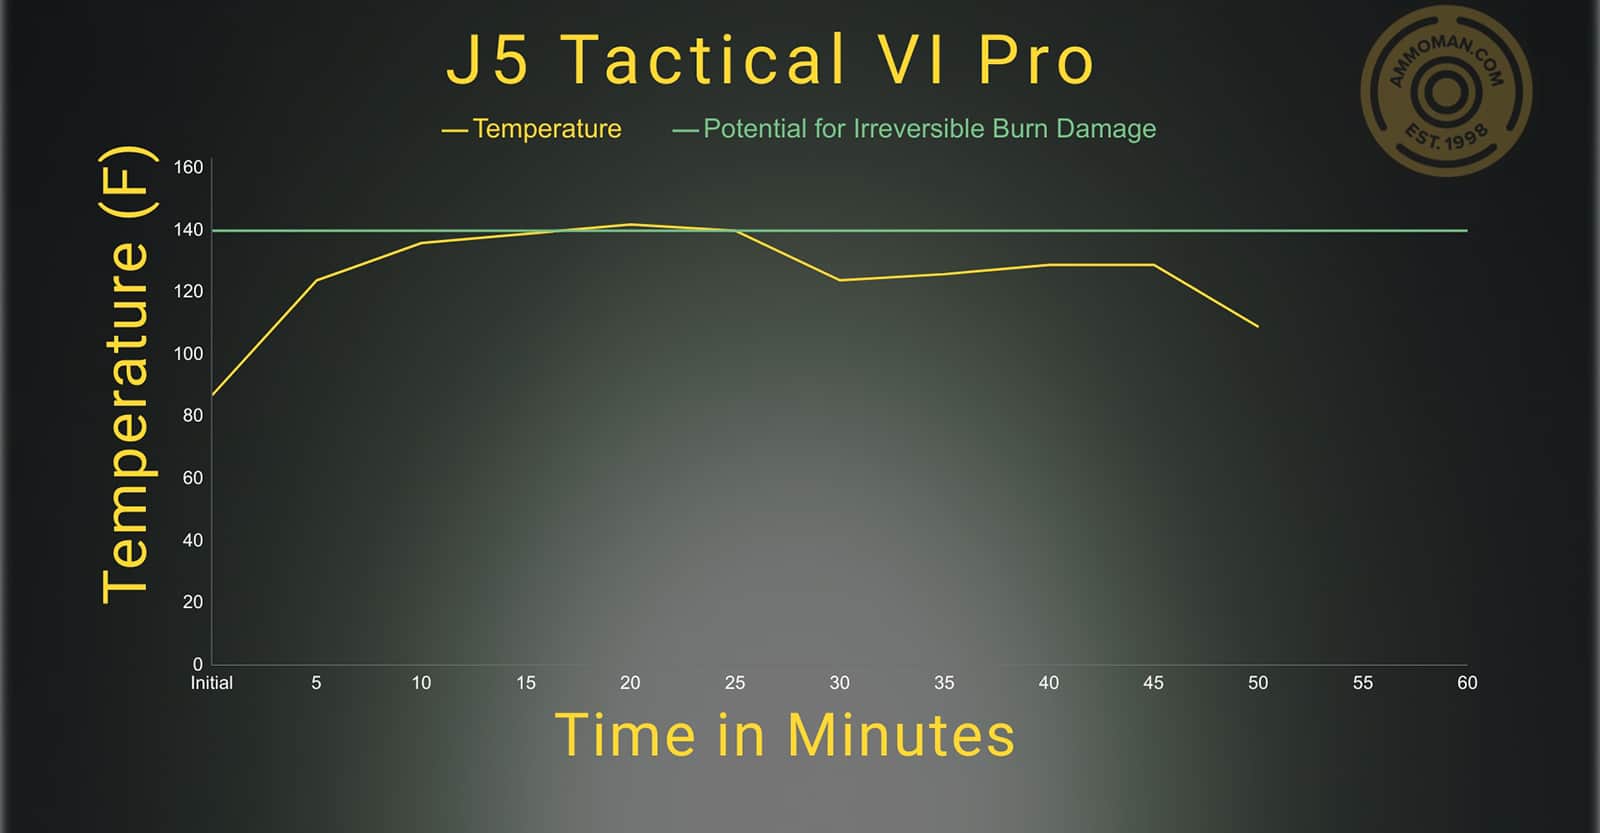 J5 Tactical V1 Pro temperature profile